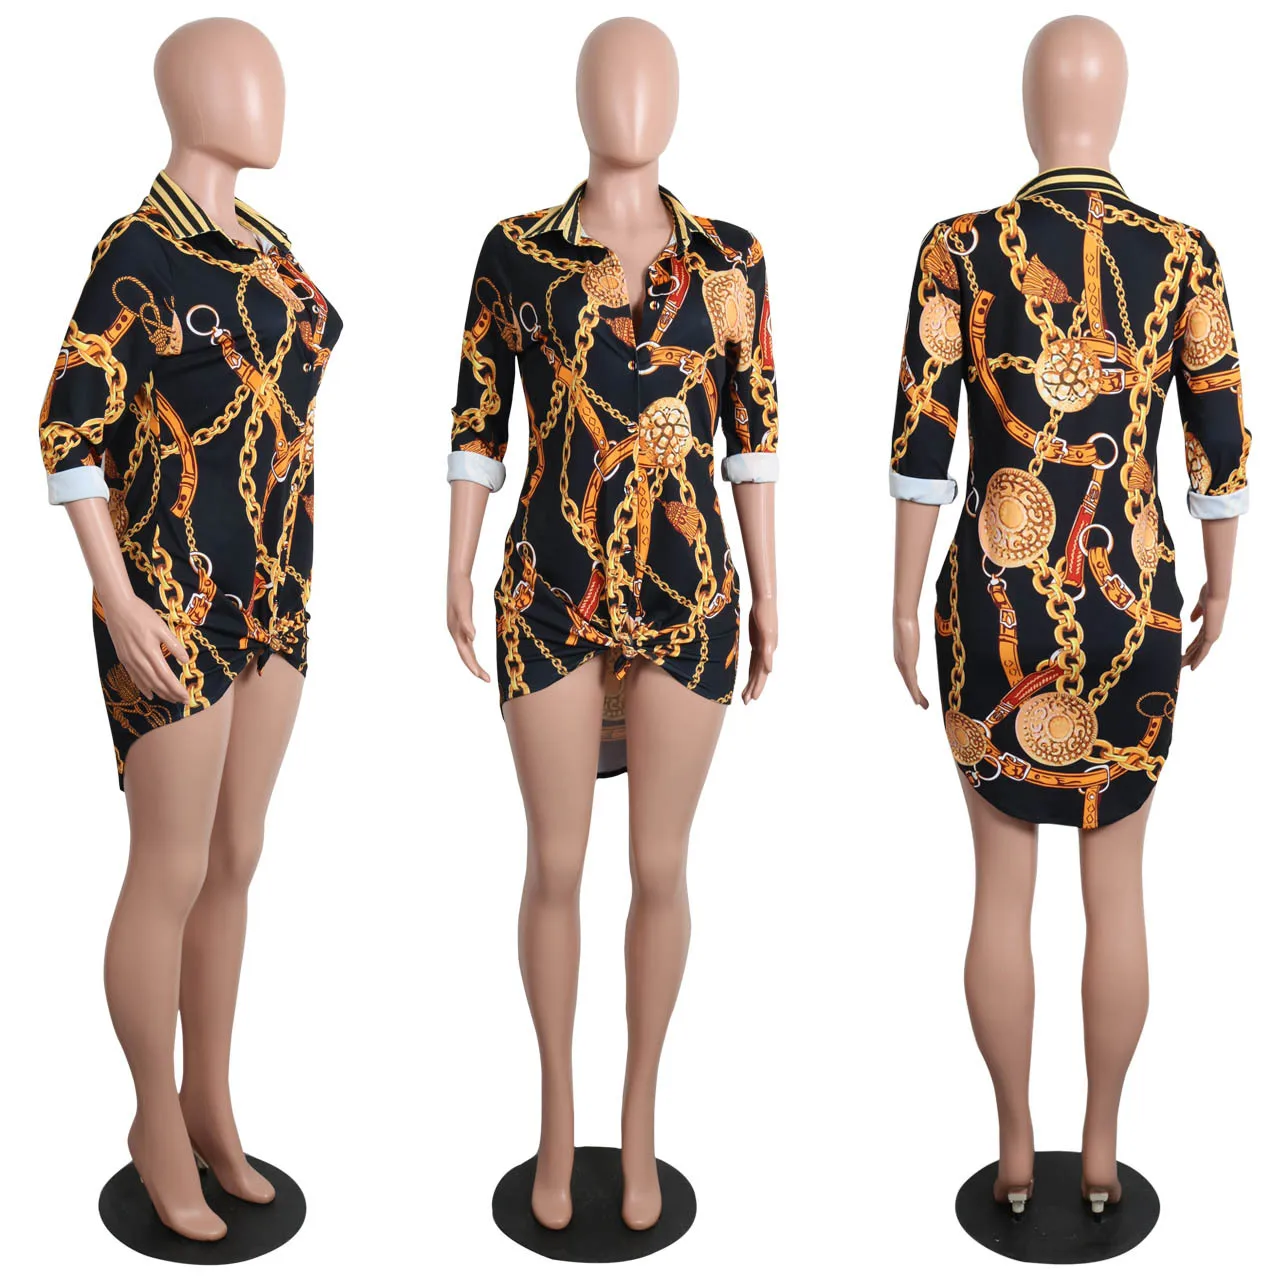 Дашики африканская одежда костюм фантастический Ки с длинными рукавами женская футболка платье, Цветочная черная цепочка напечатанная модная мини-юбка